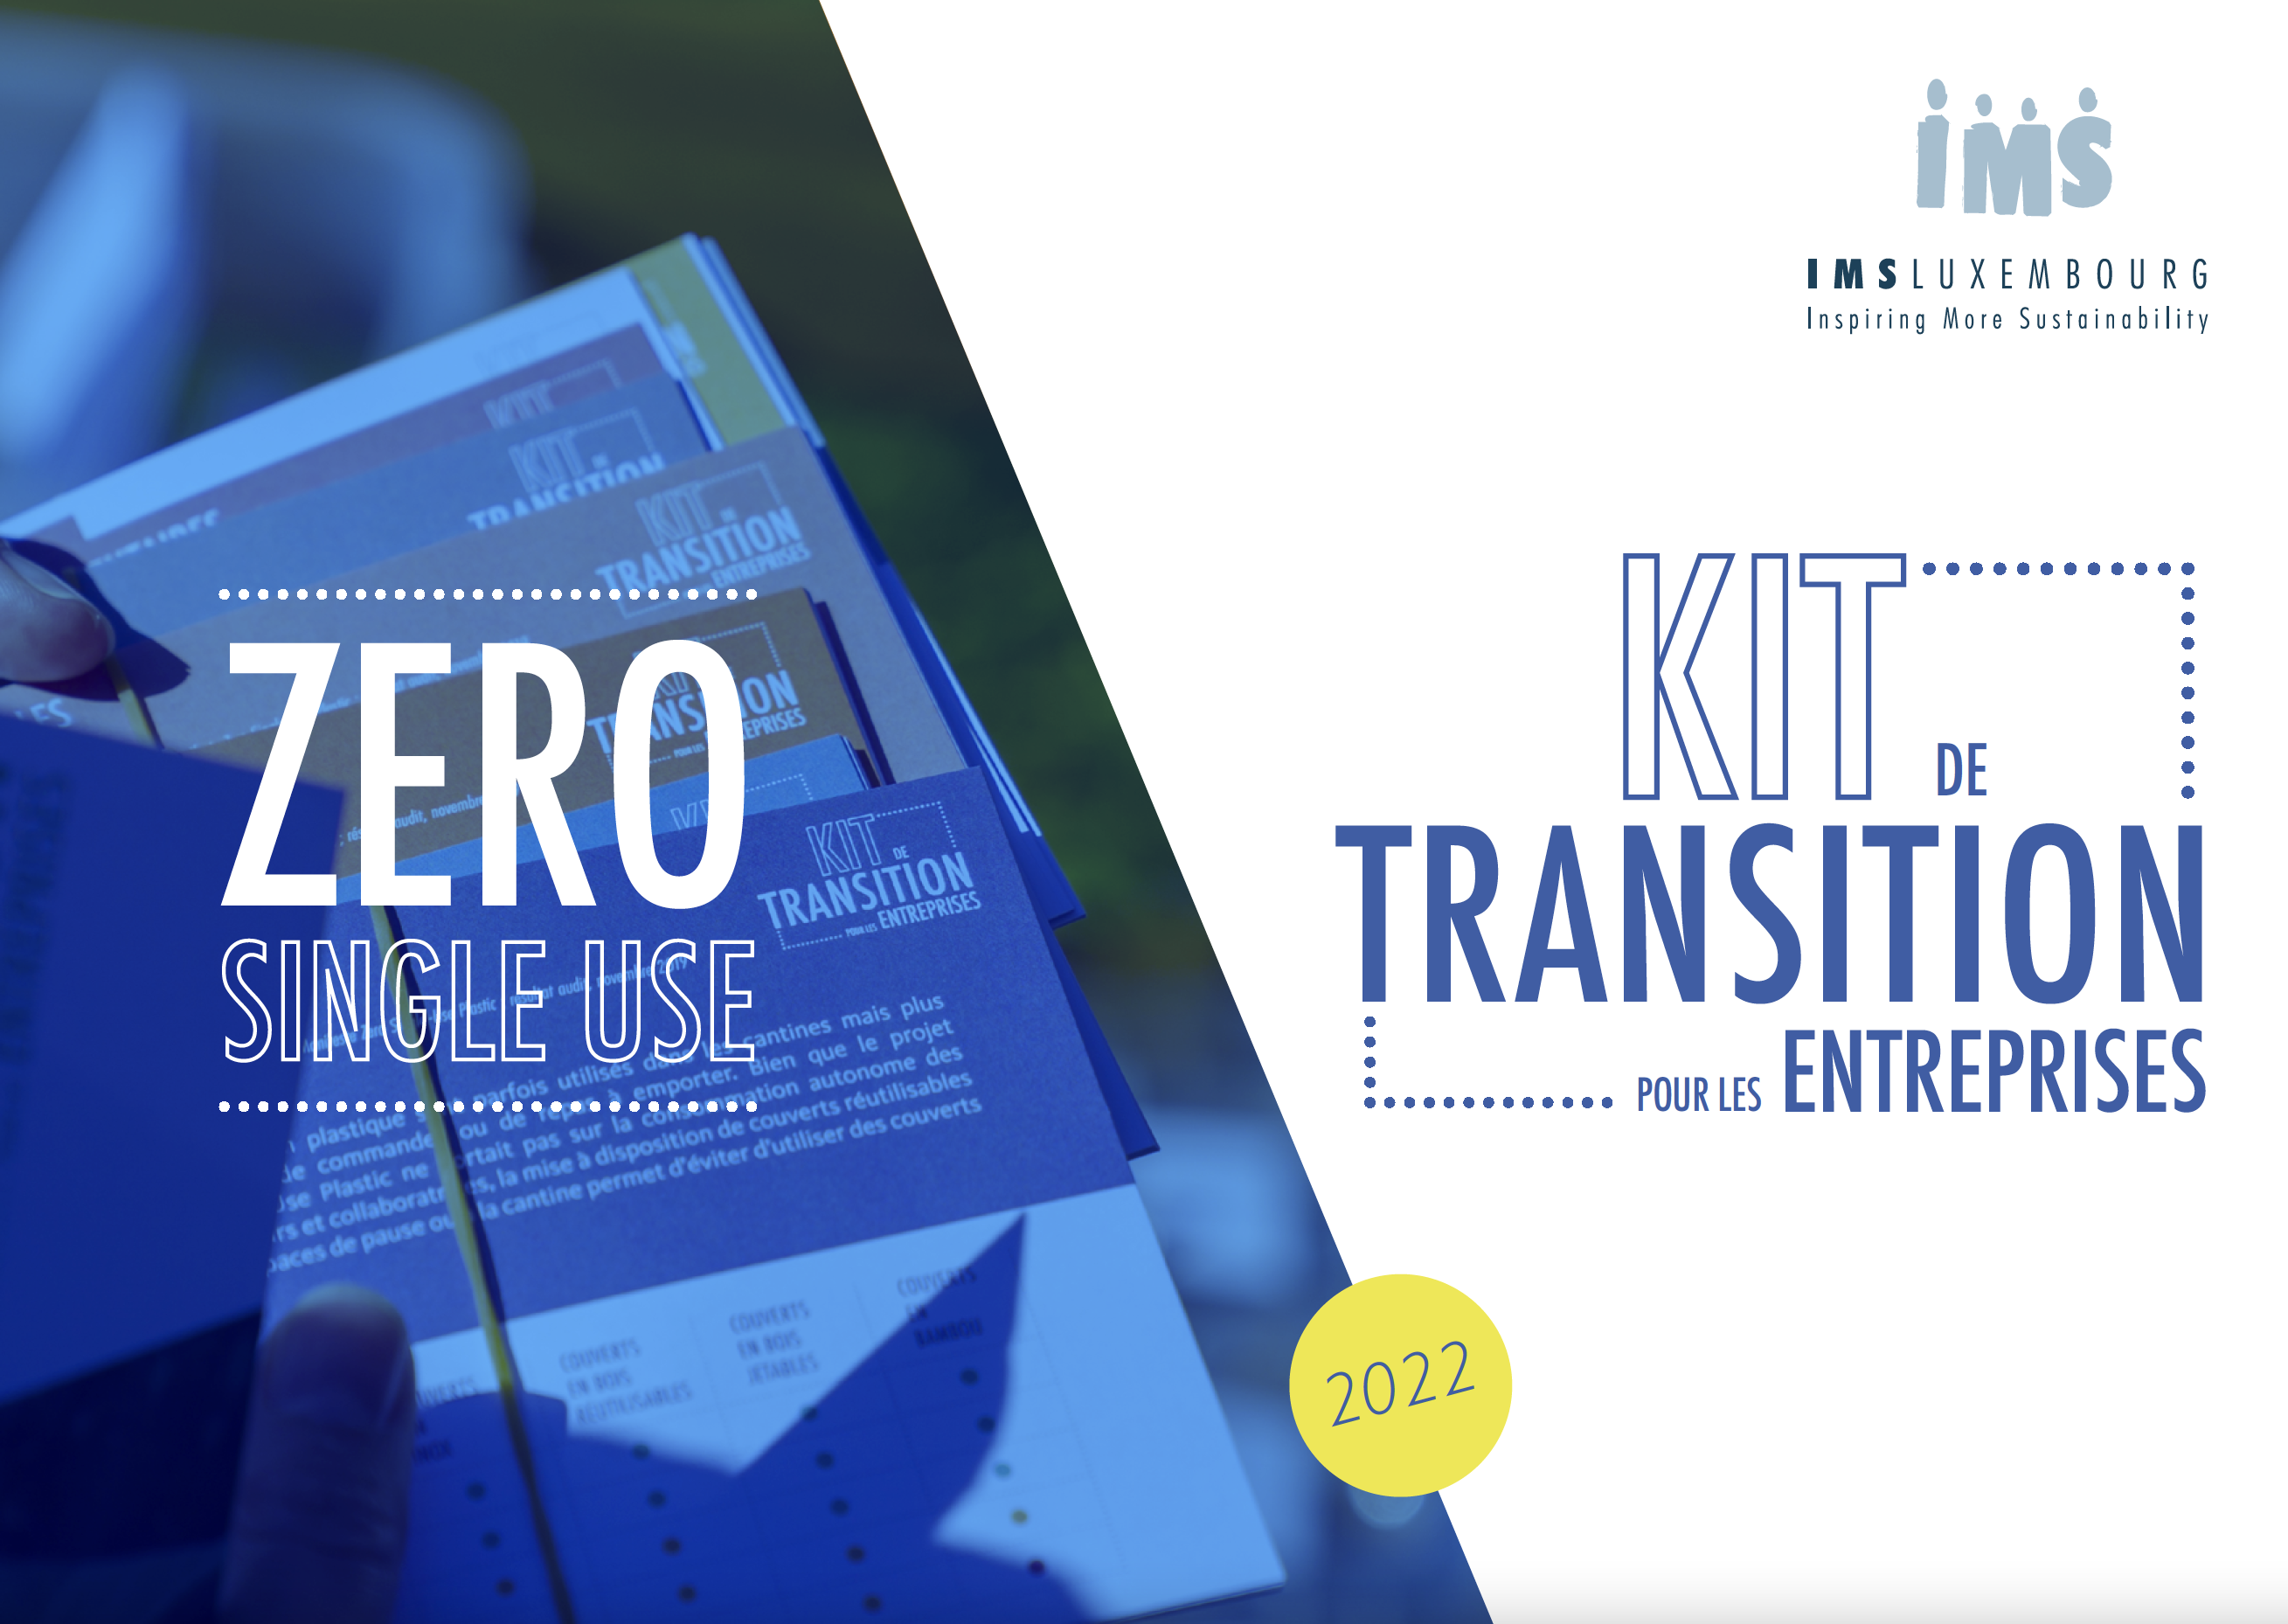 Kit de transition pour les entreprises